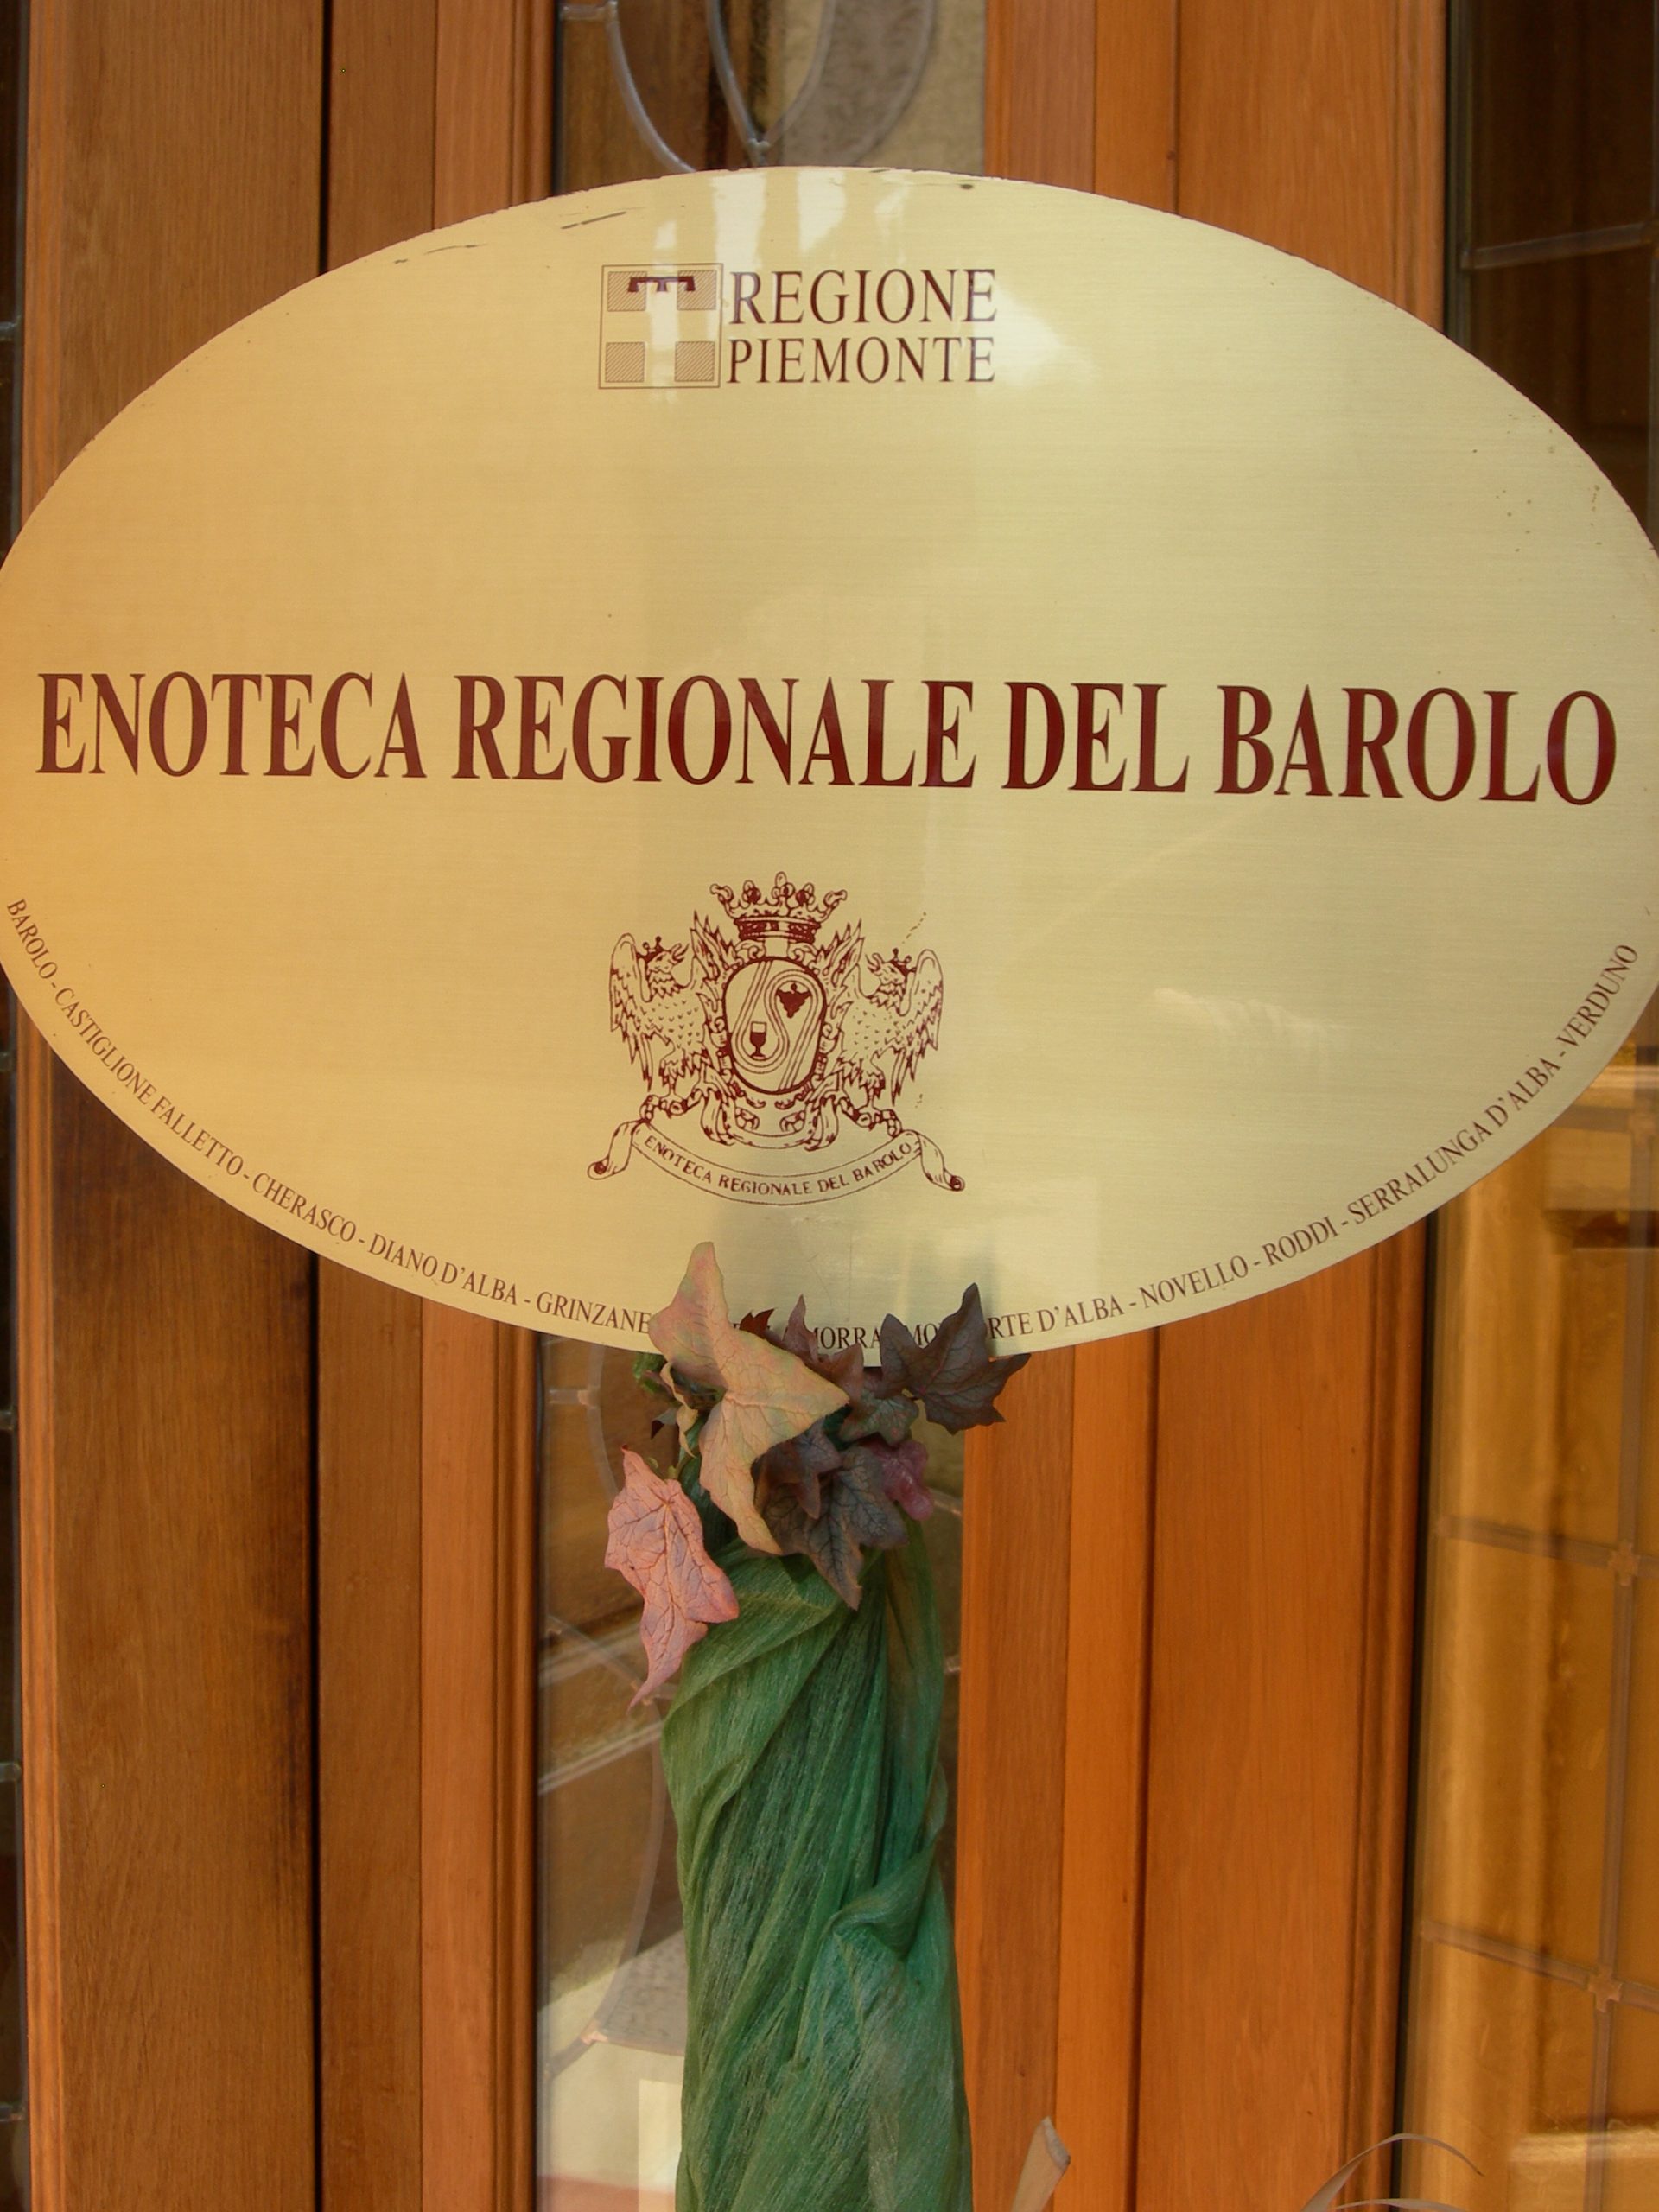 Barolo Enoteca Regionale Del Barolo Lib Comune.jpg